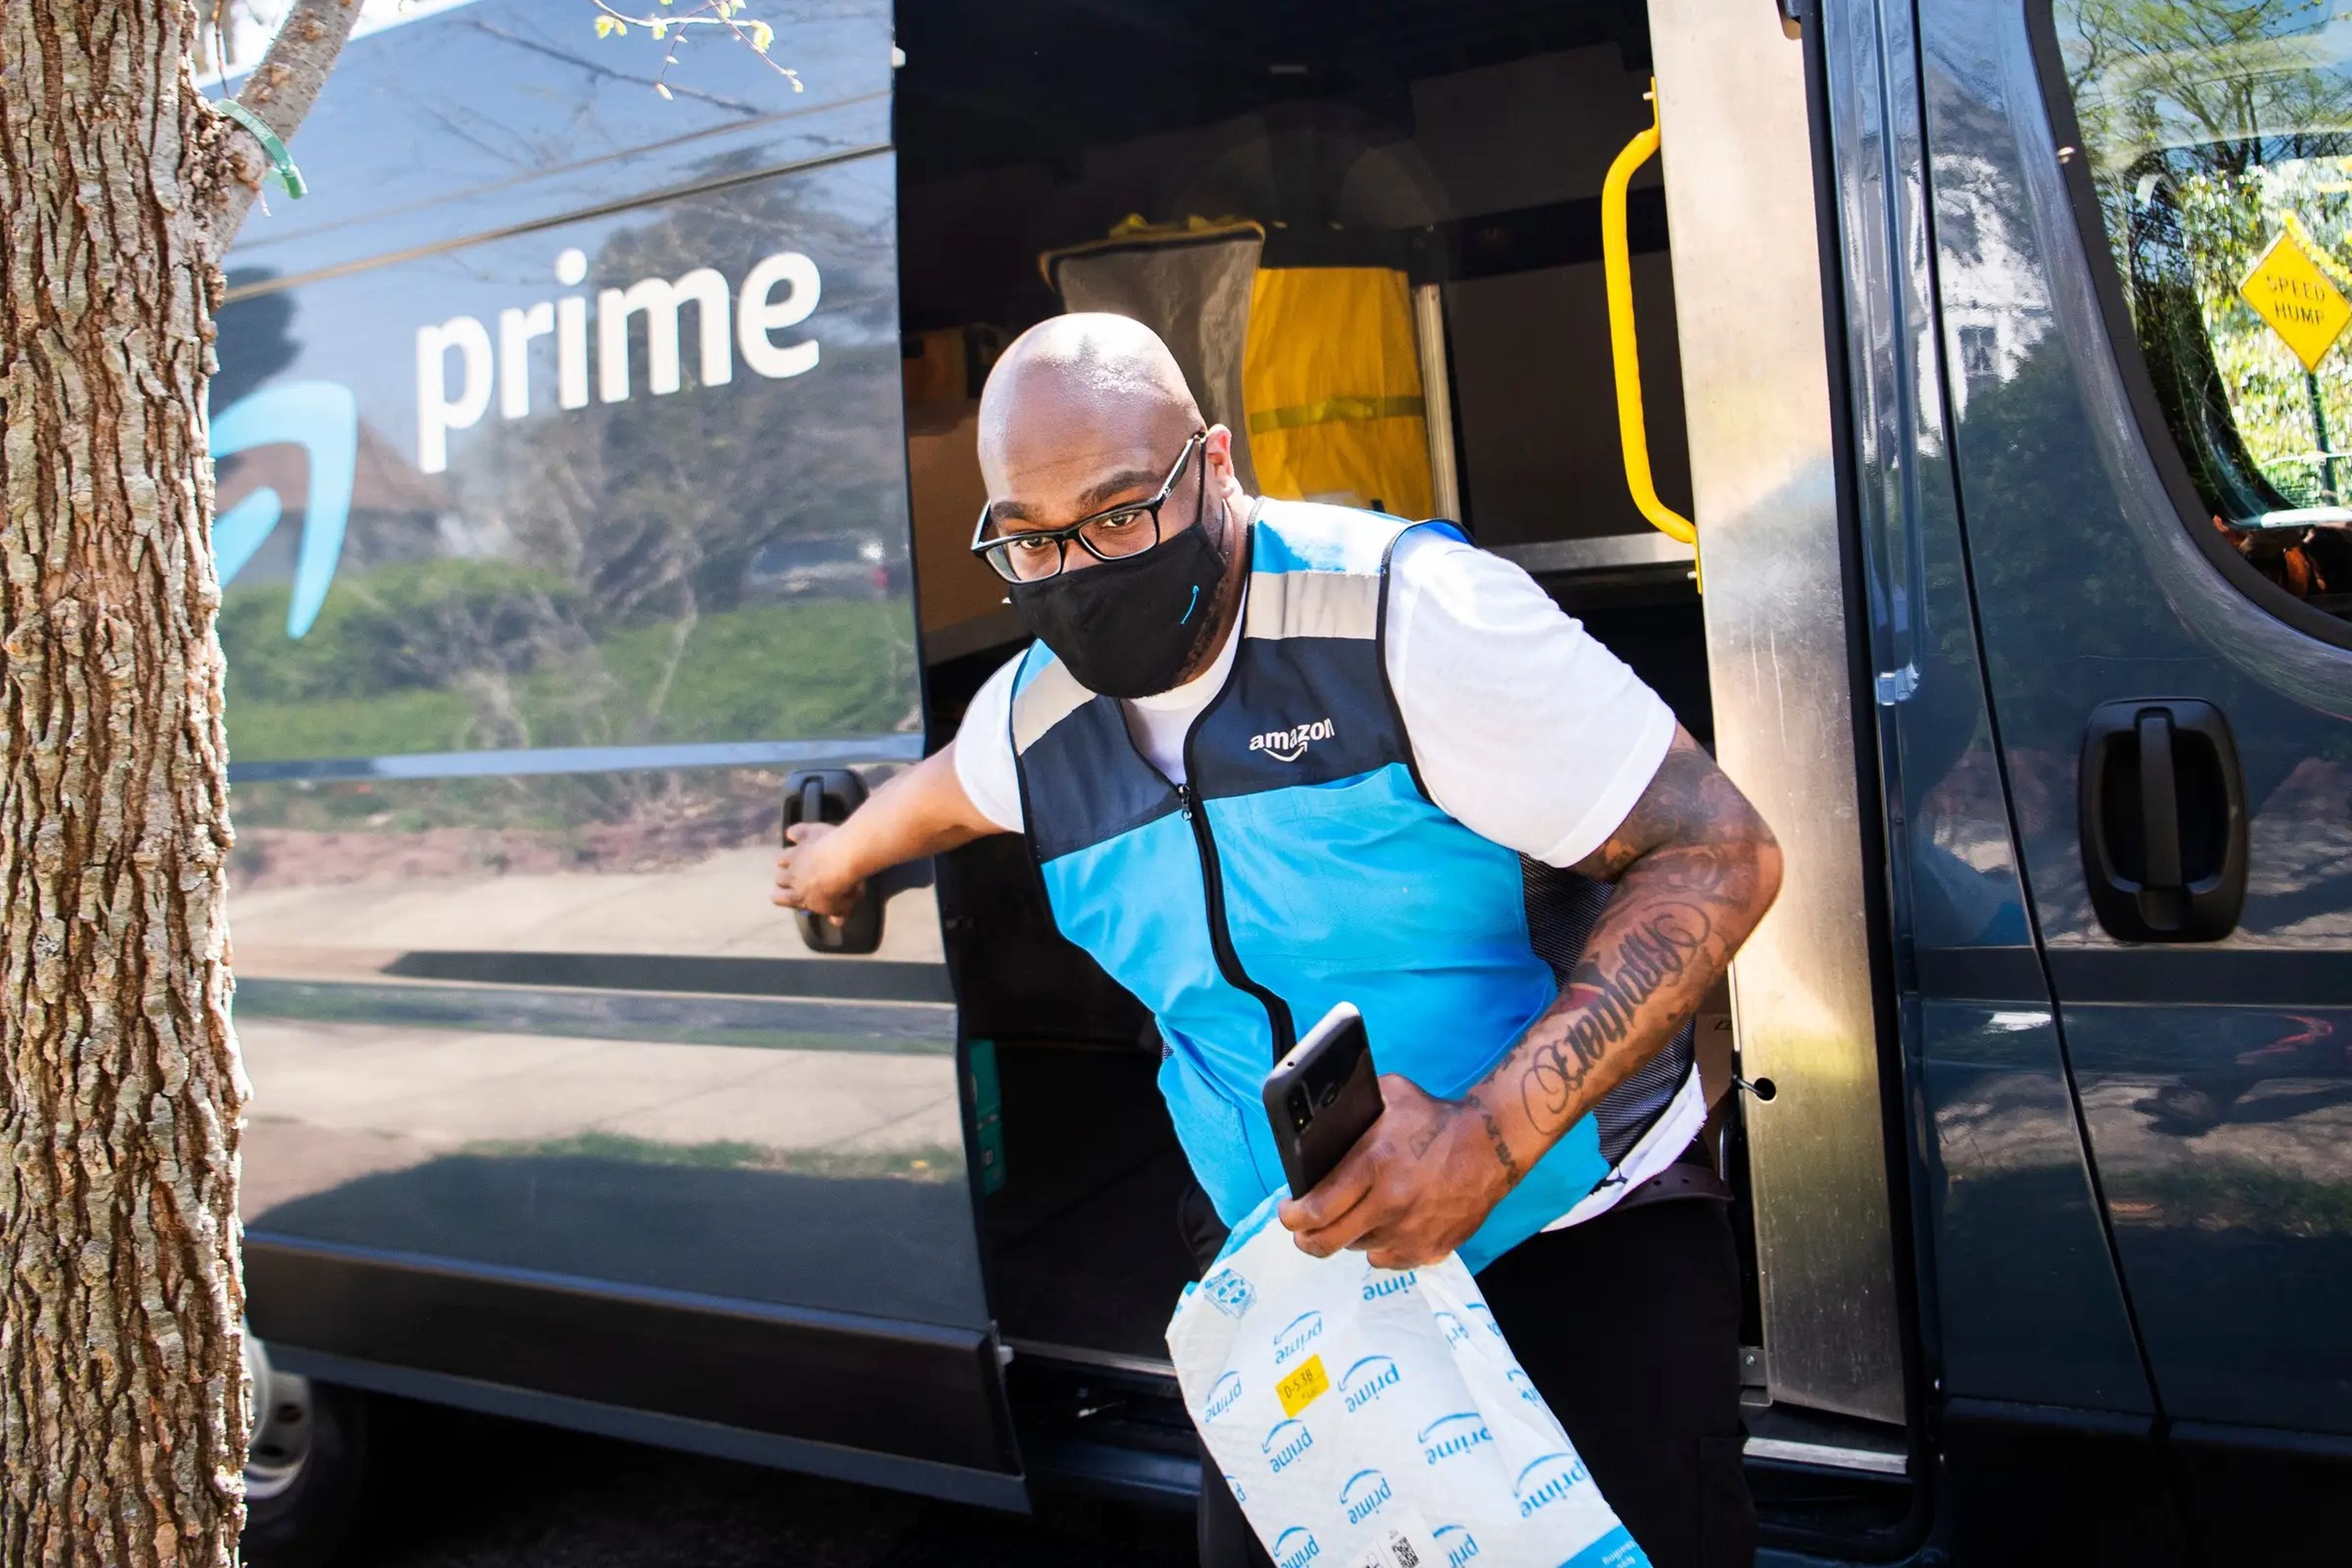 Los repartidores de Amazon suelen tener objetivos de productividad exigentes de hasta 300 paquetes al día, lo que provoca que tengan que conducir rápido, según los empleados.